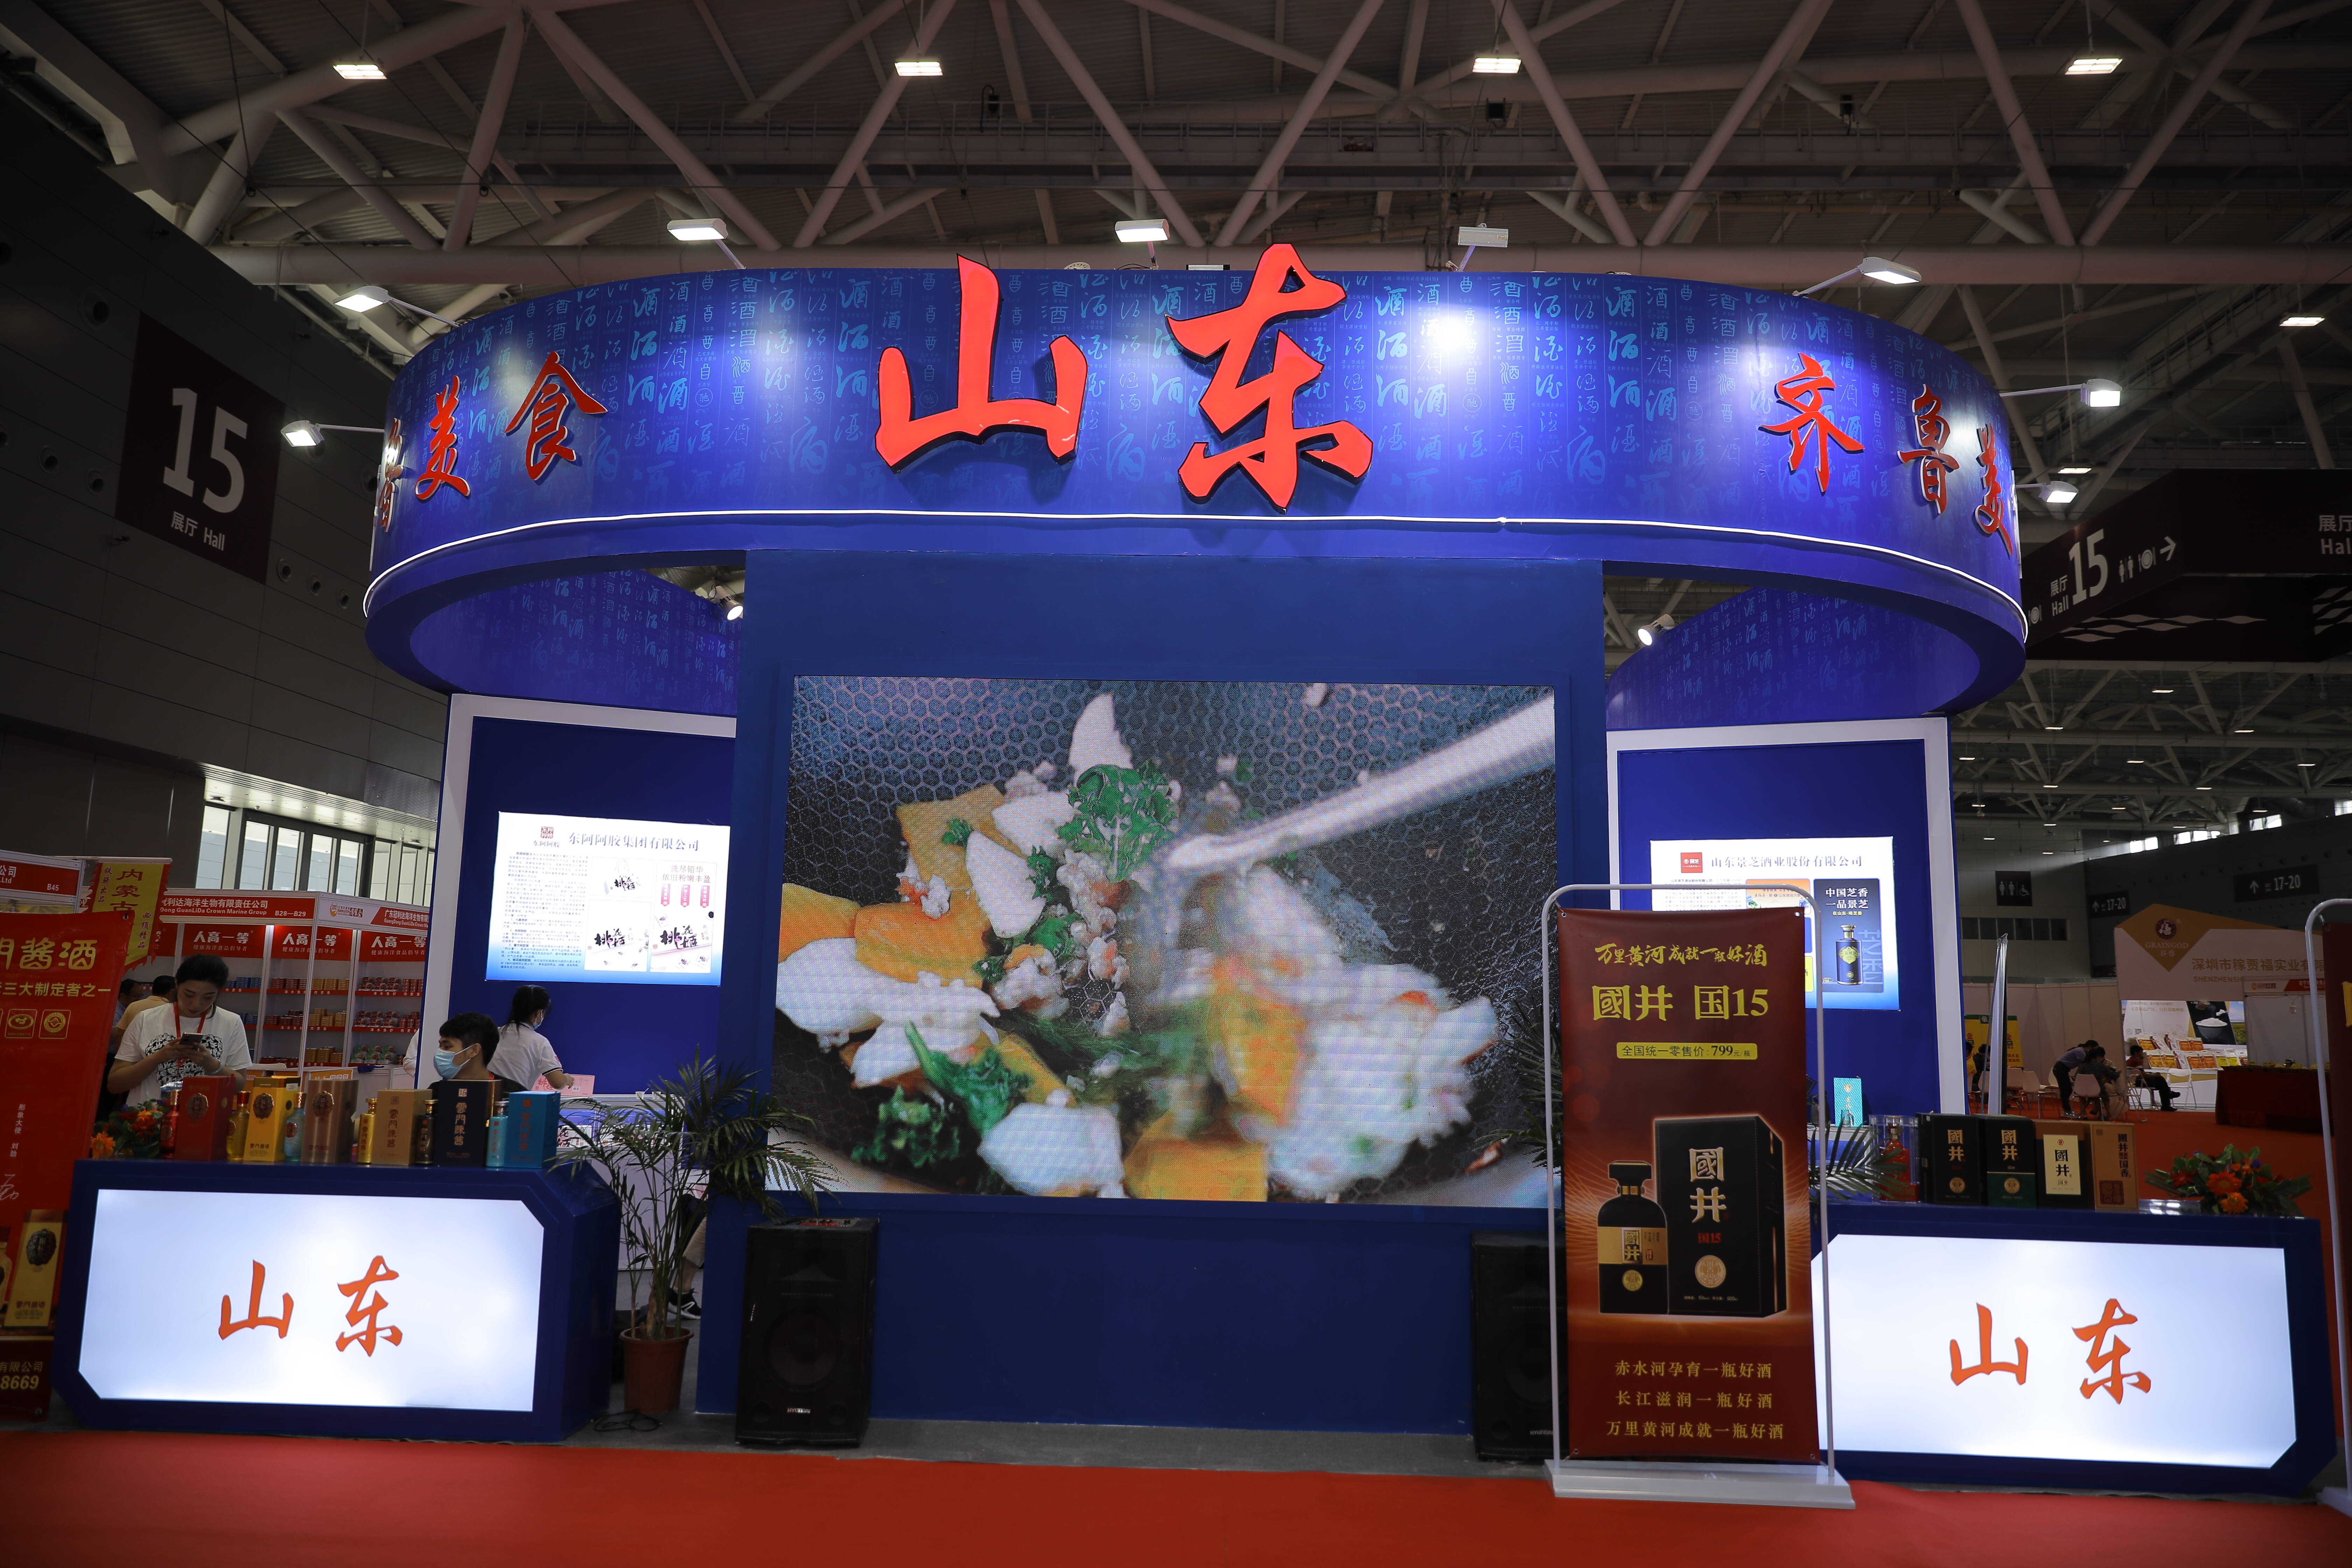 山东食品产业高端展览走进深圳 多家企业组团亮相打响山东食品品牌知名度